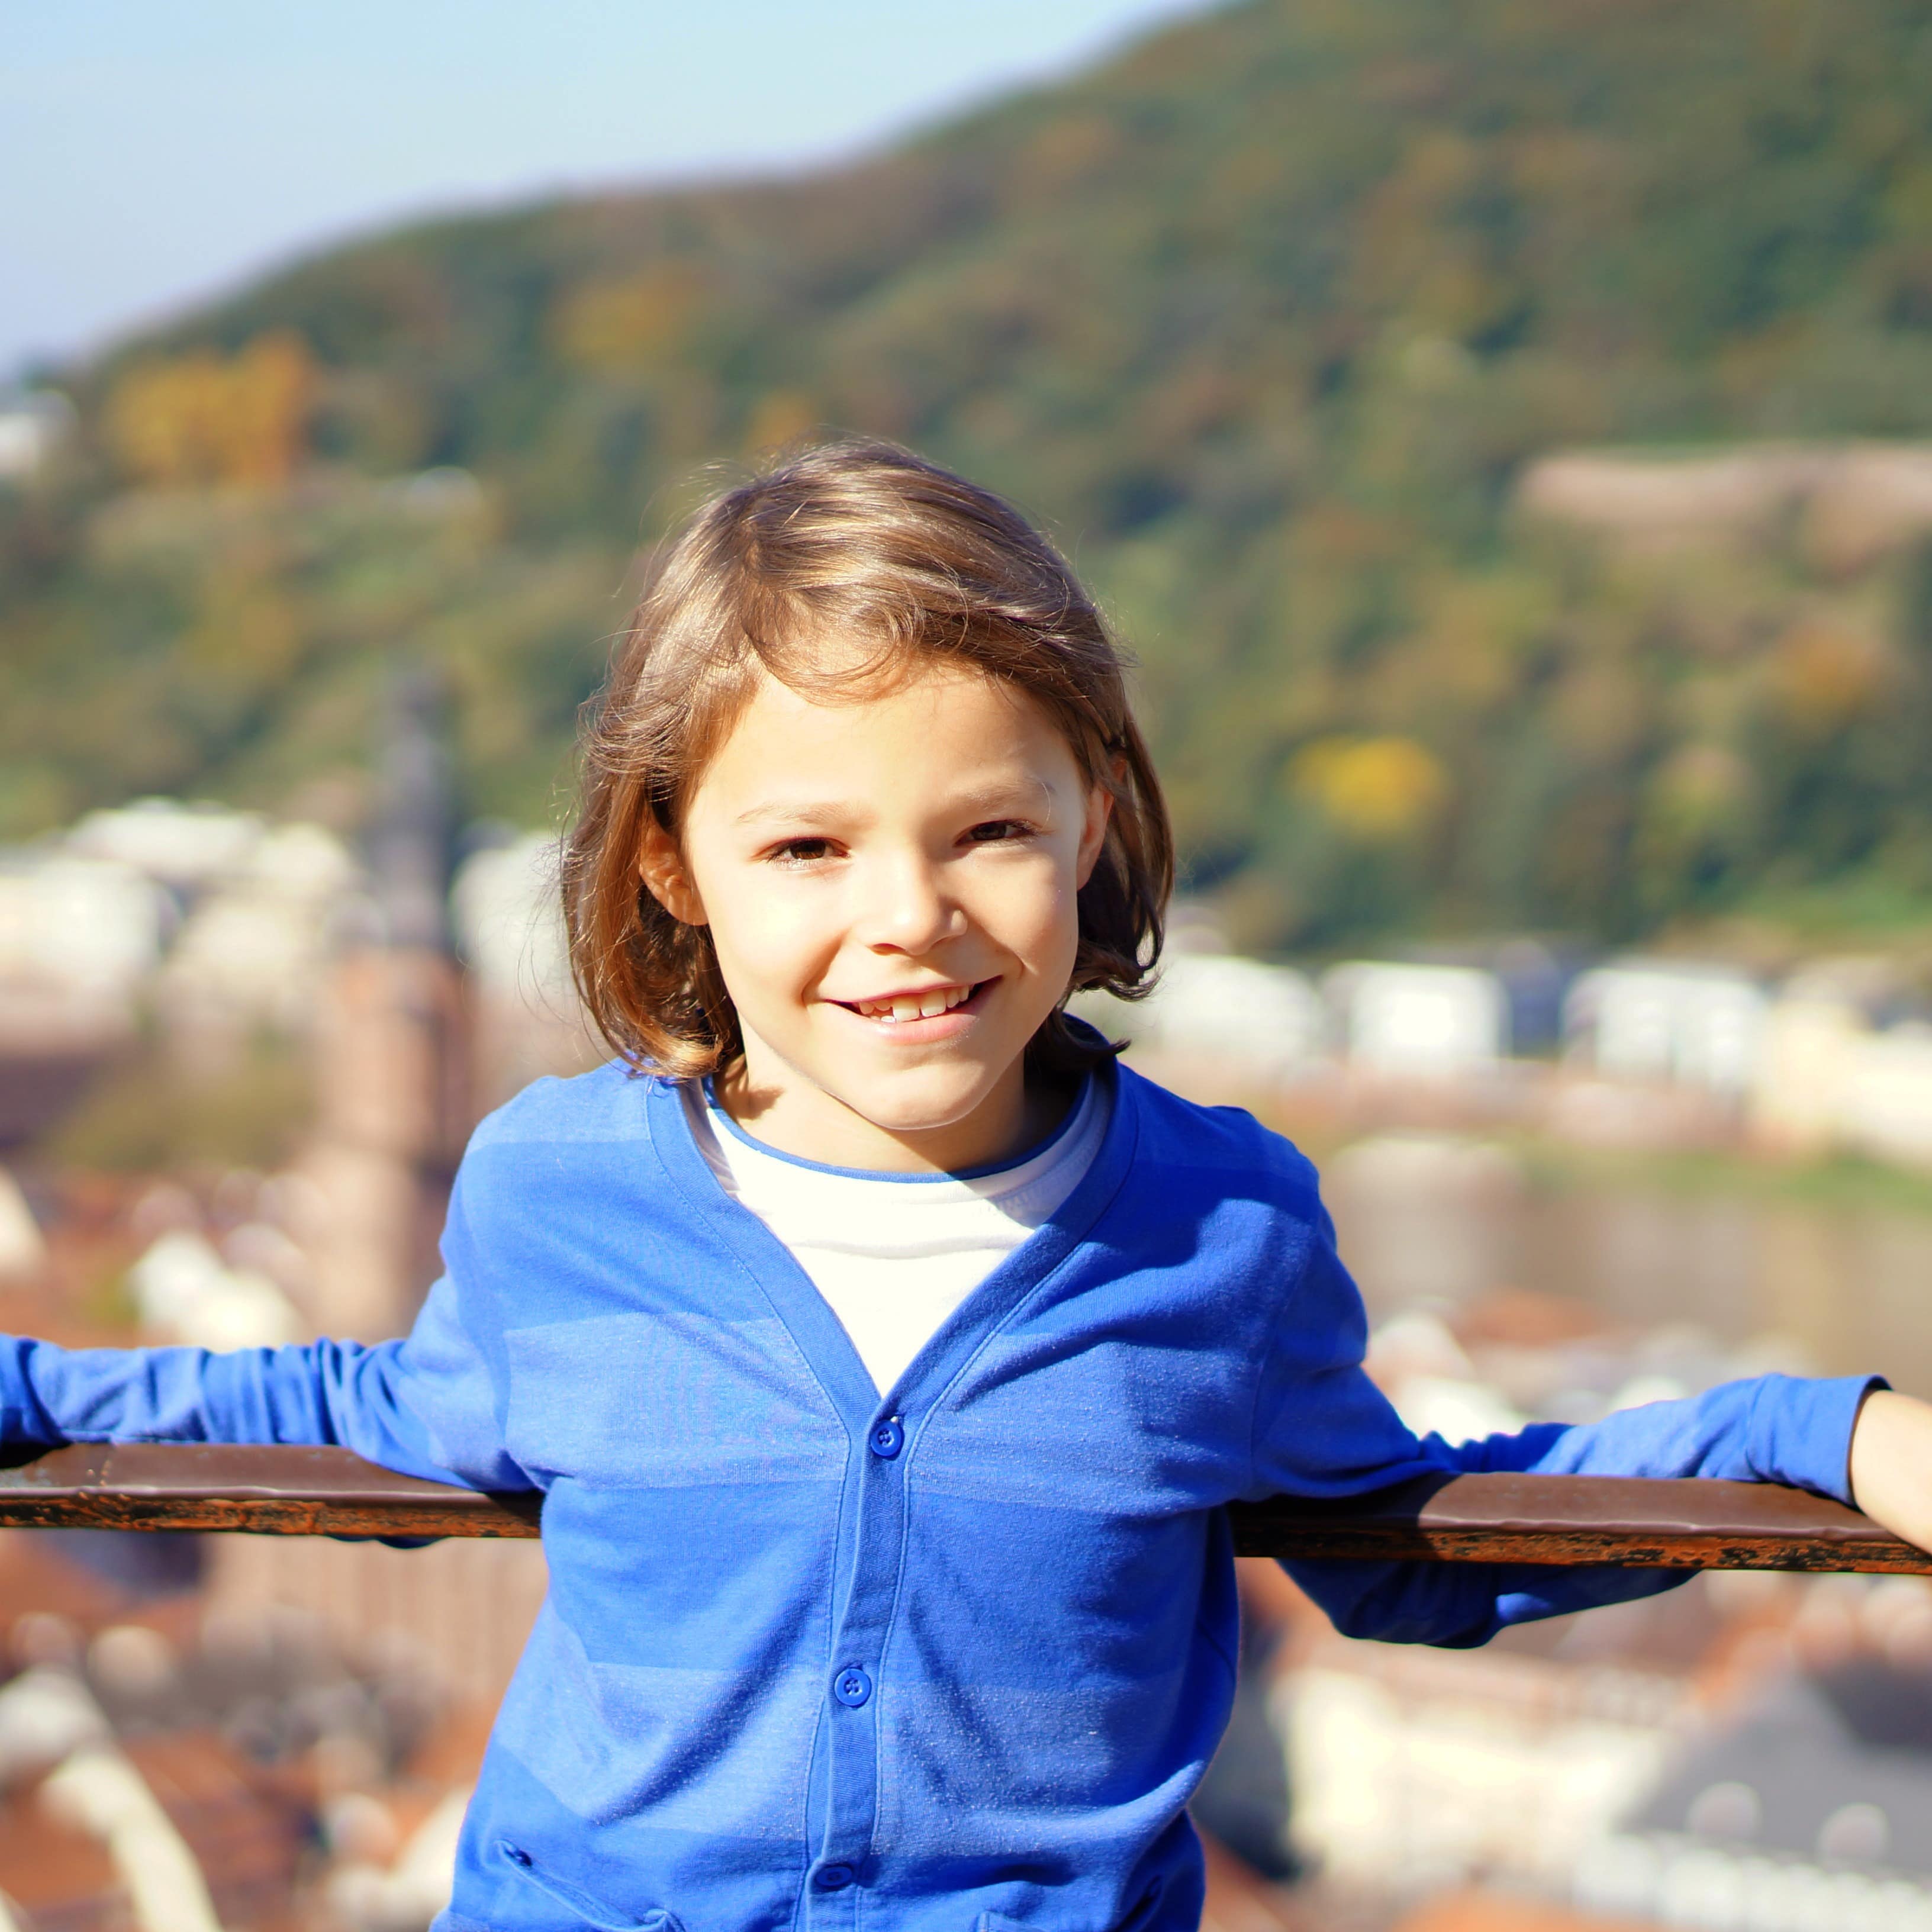 Junge mit kinnlangen Haaren und blauer Strickjacke lehnt an einem Geländer oberhalb von Heidelberg.